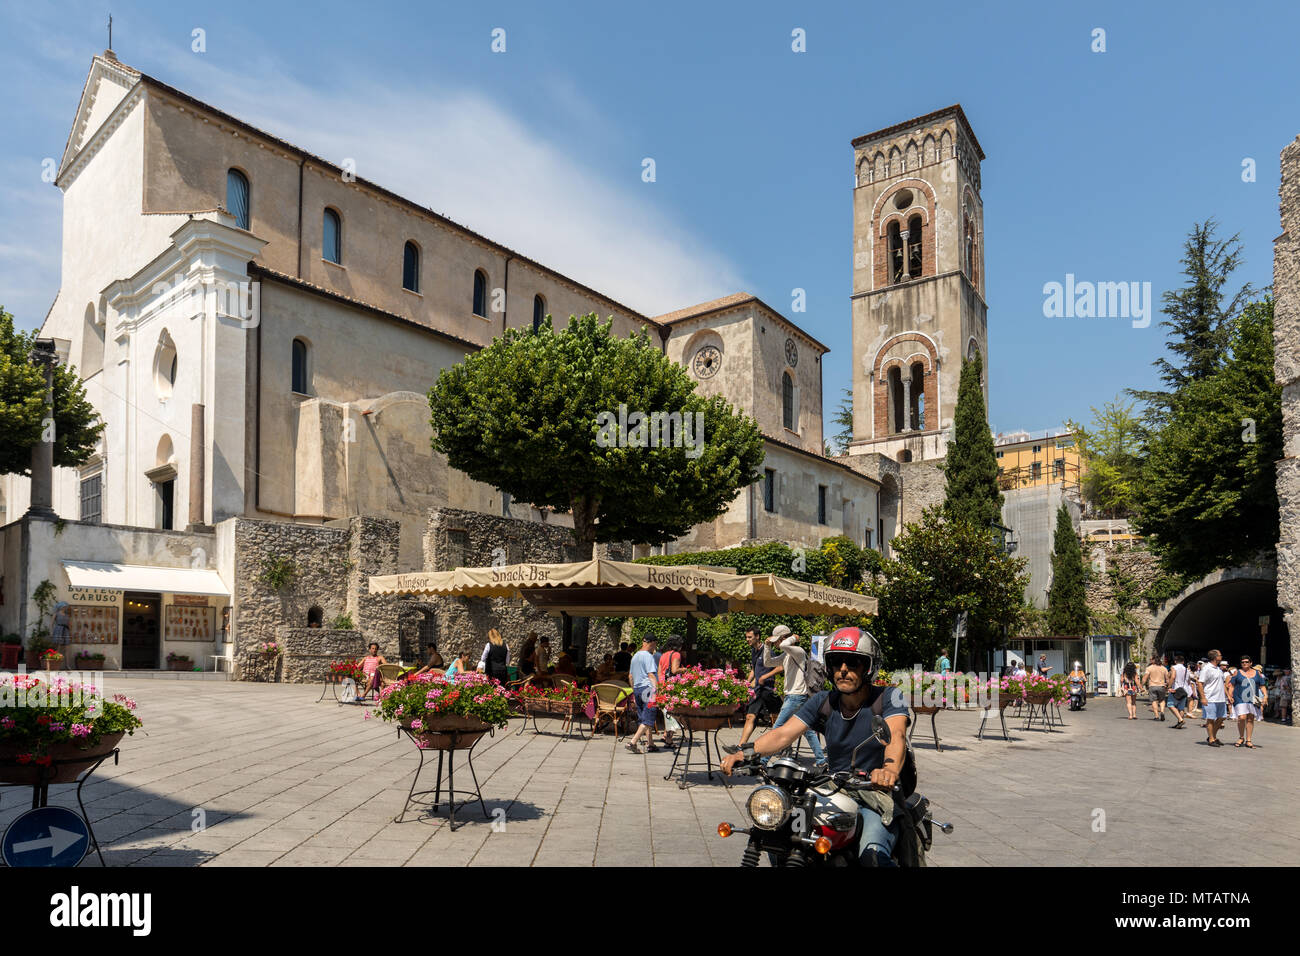 Ravello, Italie - 16 juin 2017 : La Piazza del Duomo et cathédrale de Santa Maria Assunta à Ravello , Campanie, Italie Banque D'Images